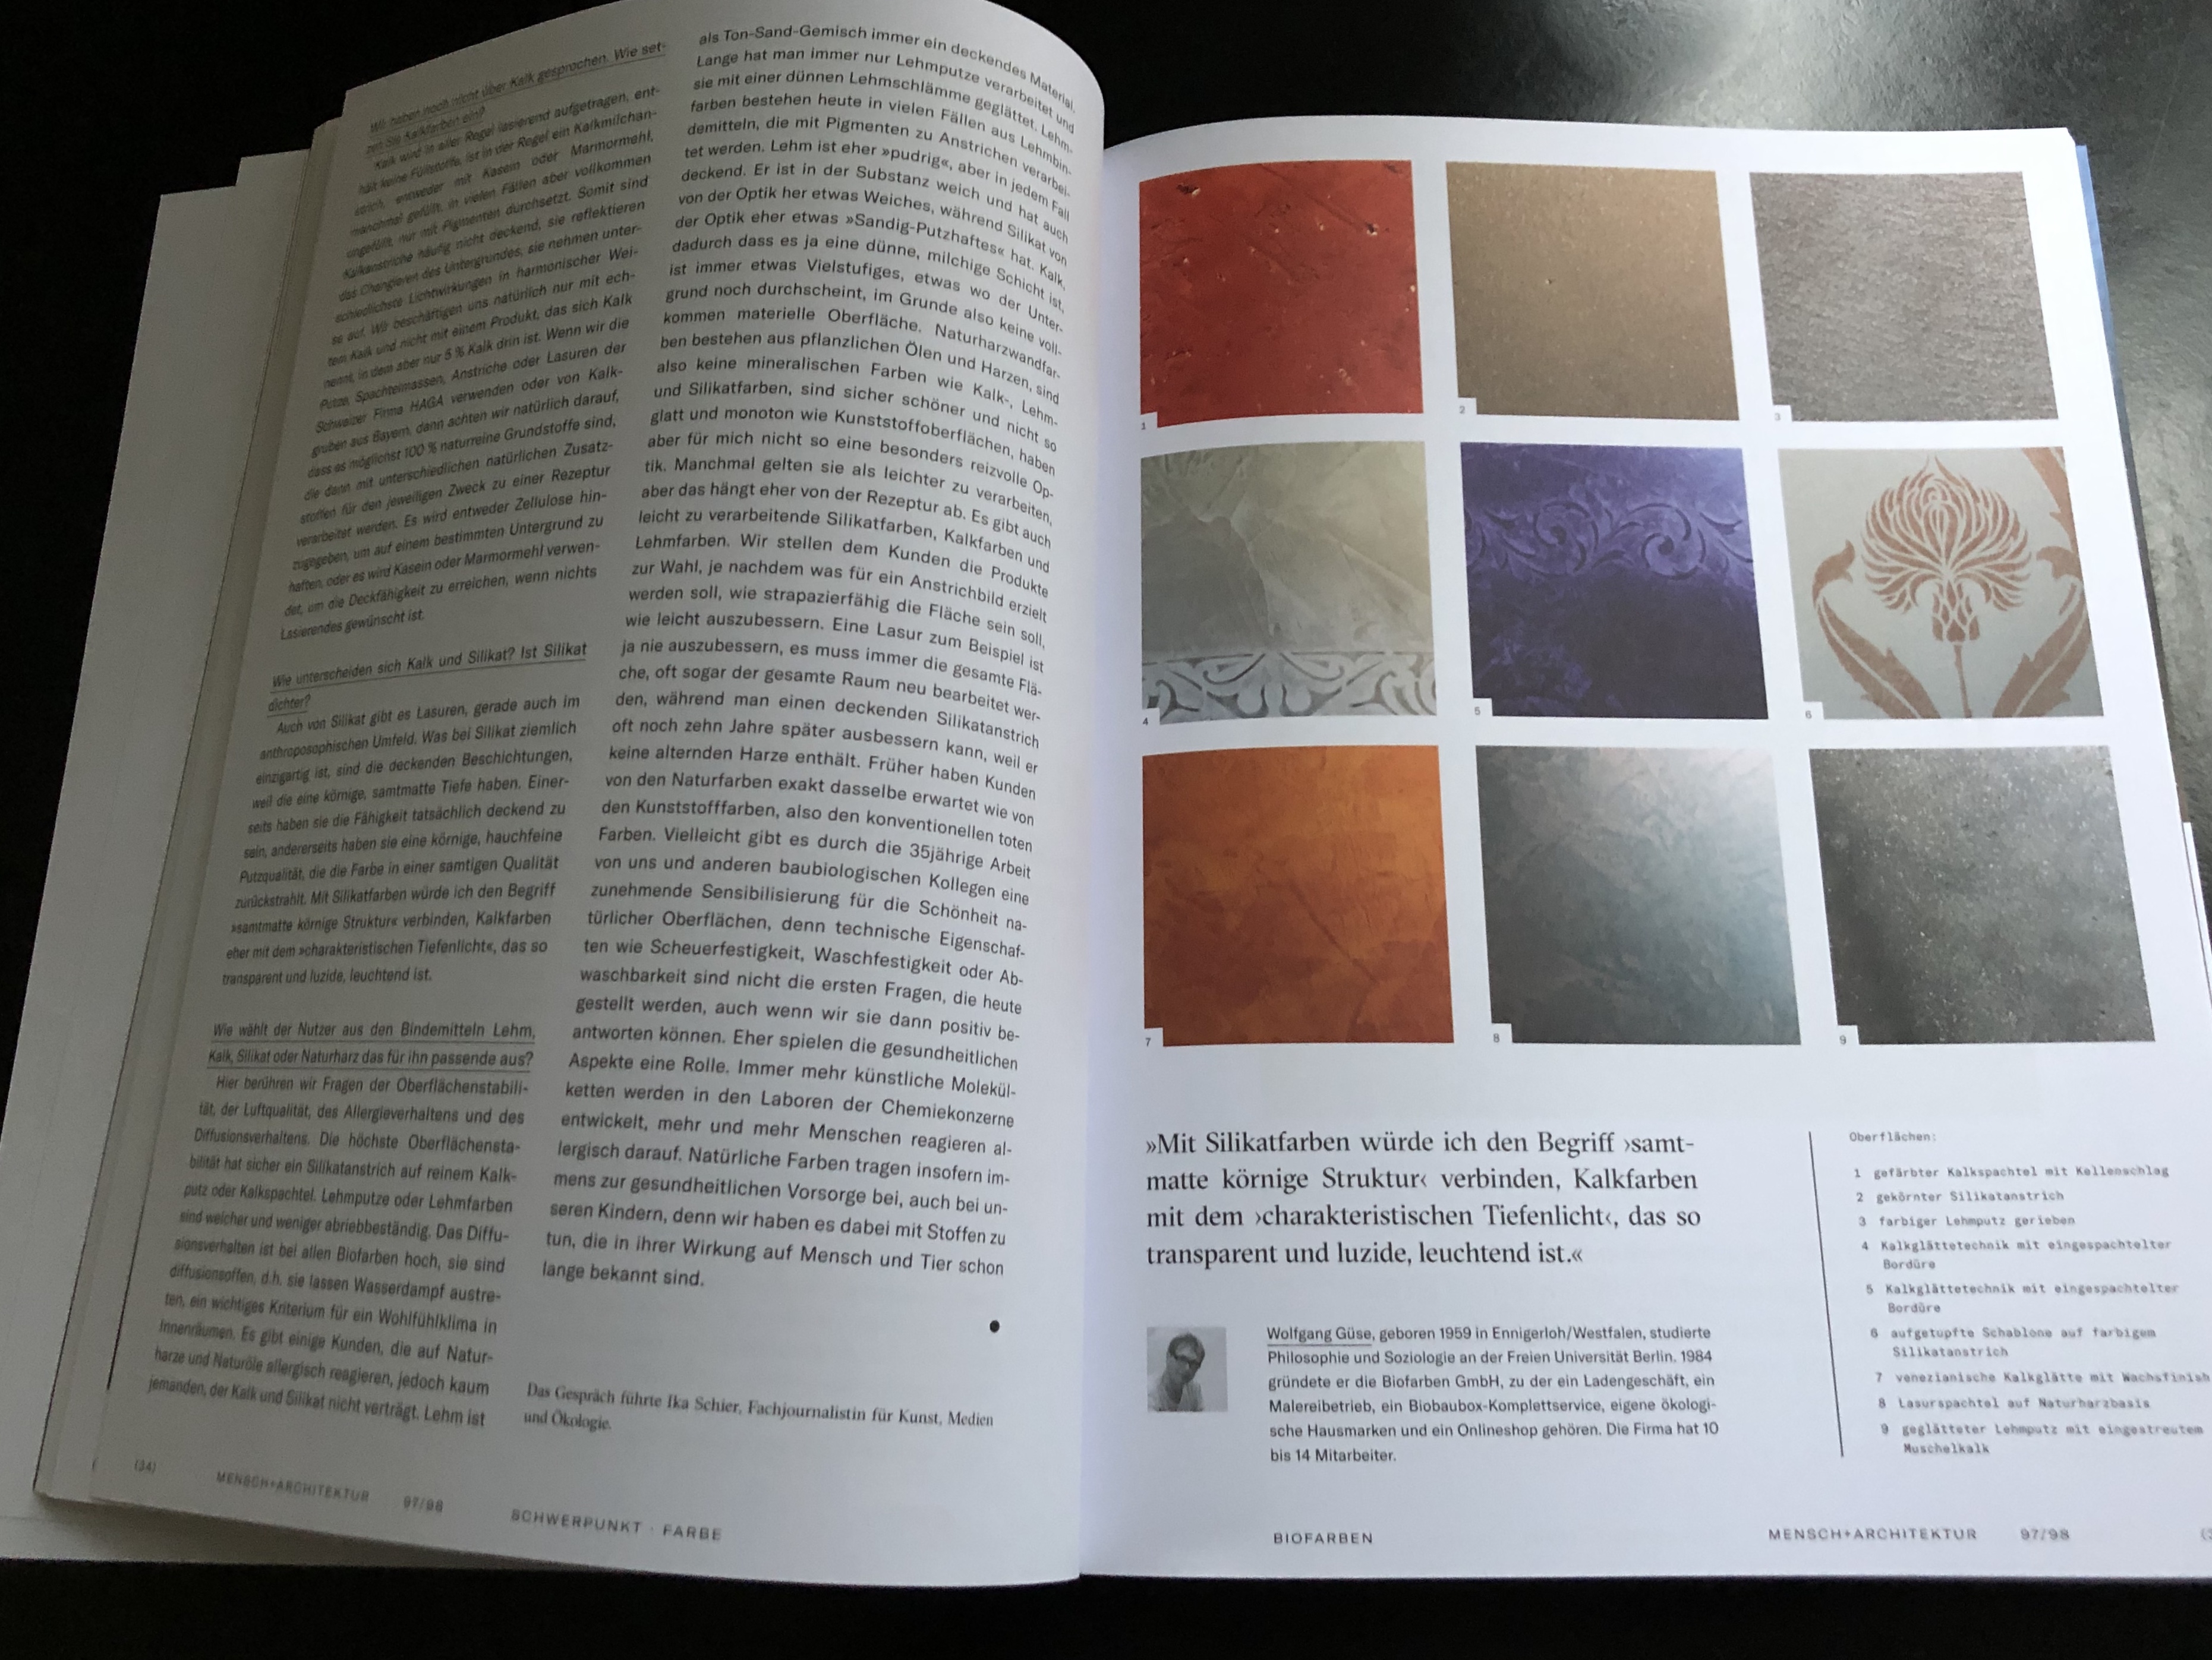 Ein Beitrag über Biofarben wurde in der Zeitschrift Mensch und Architektur veröffentlicht.